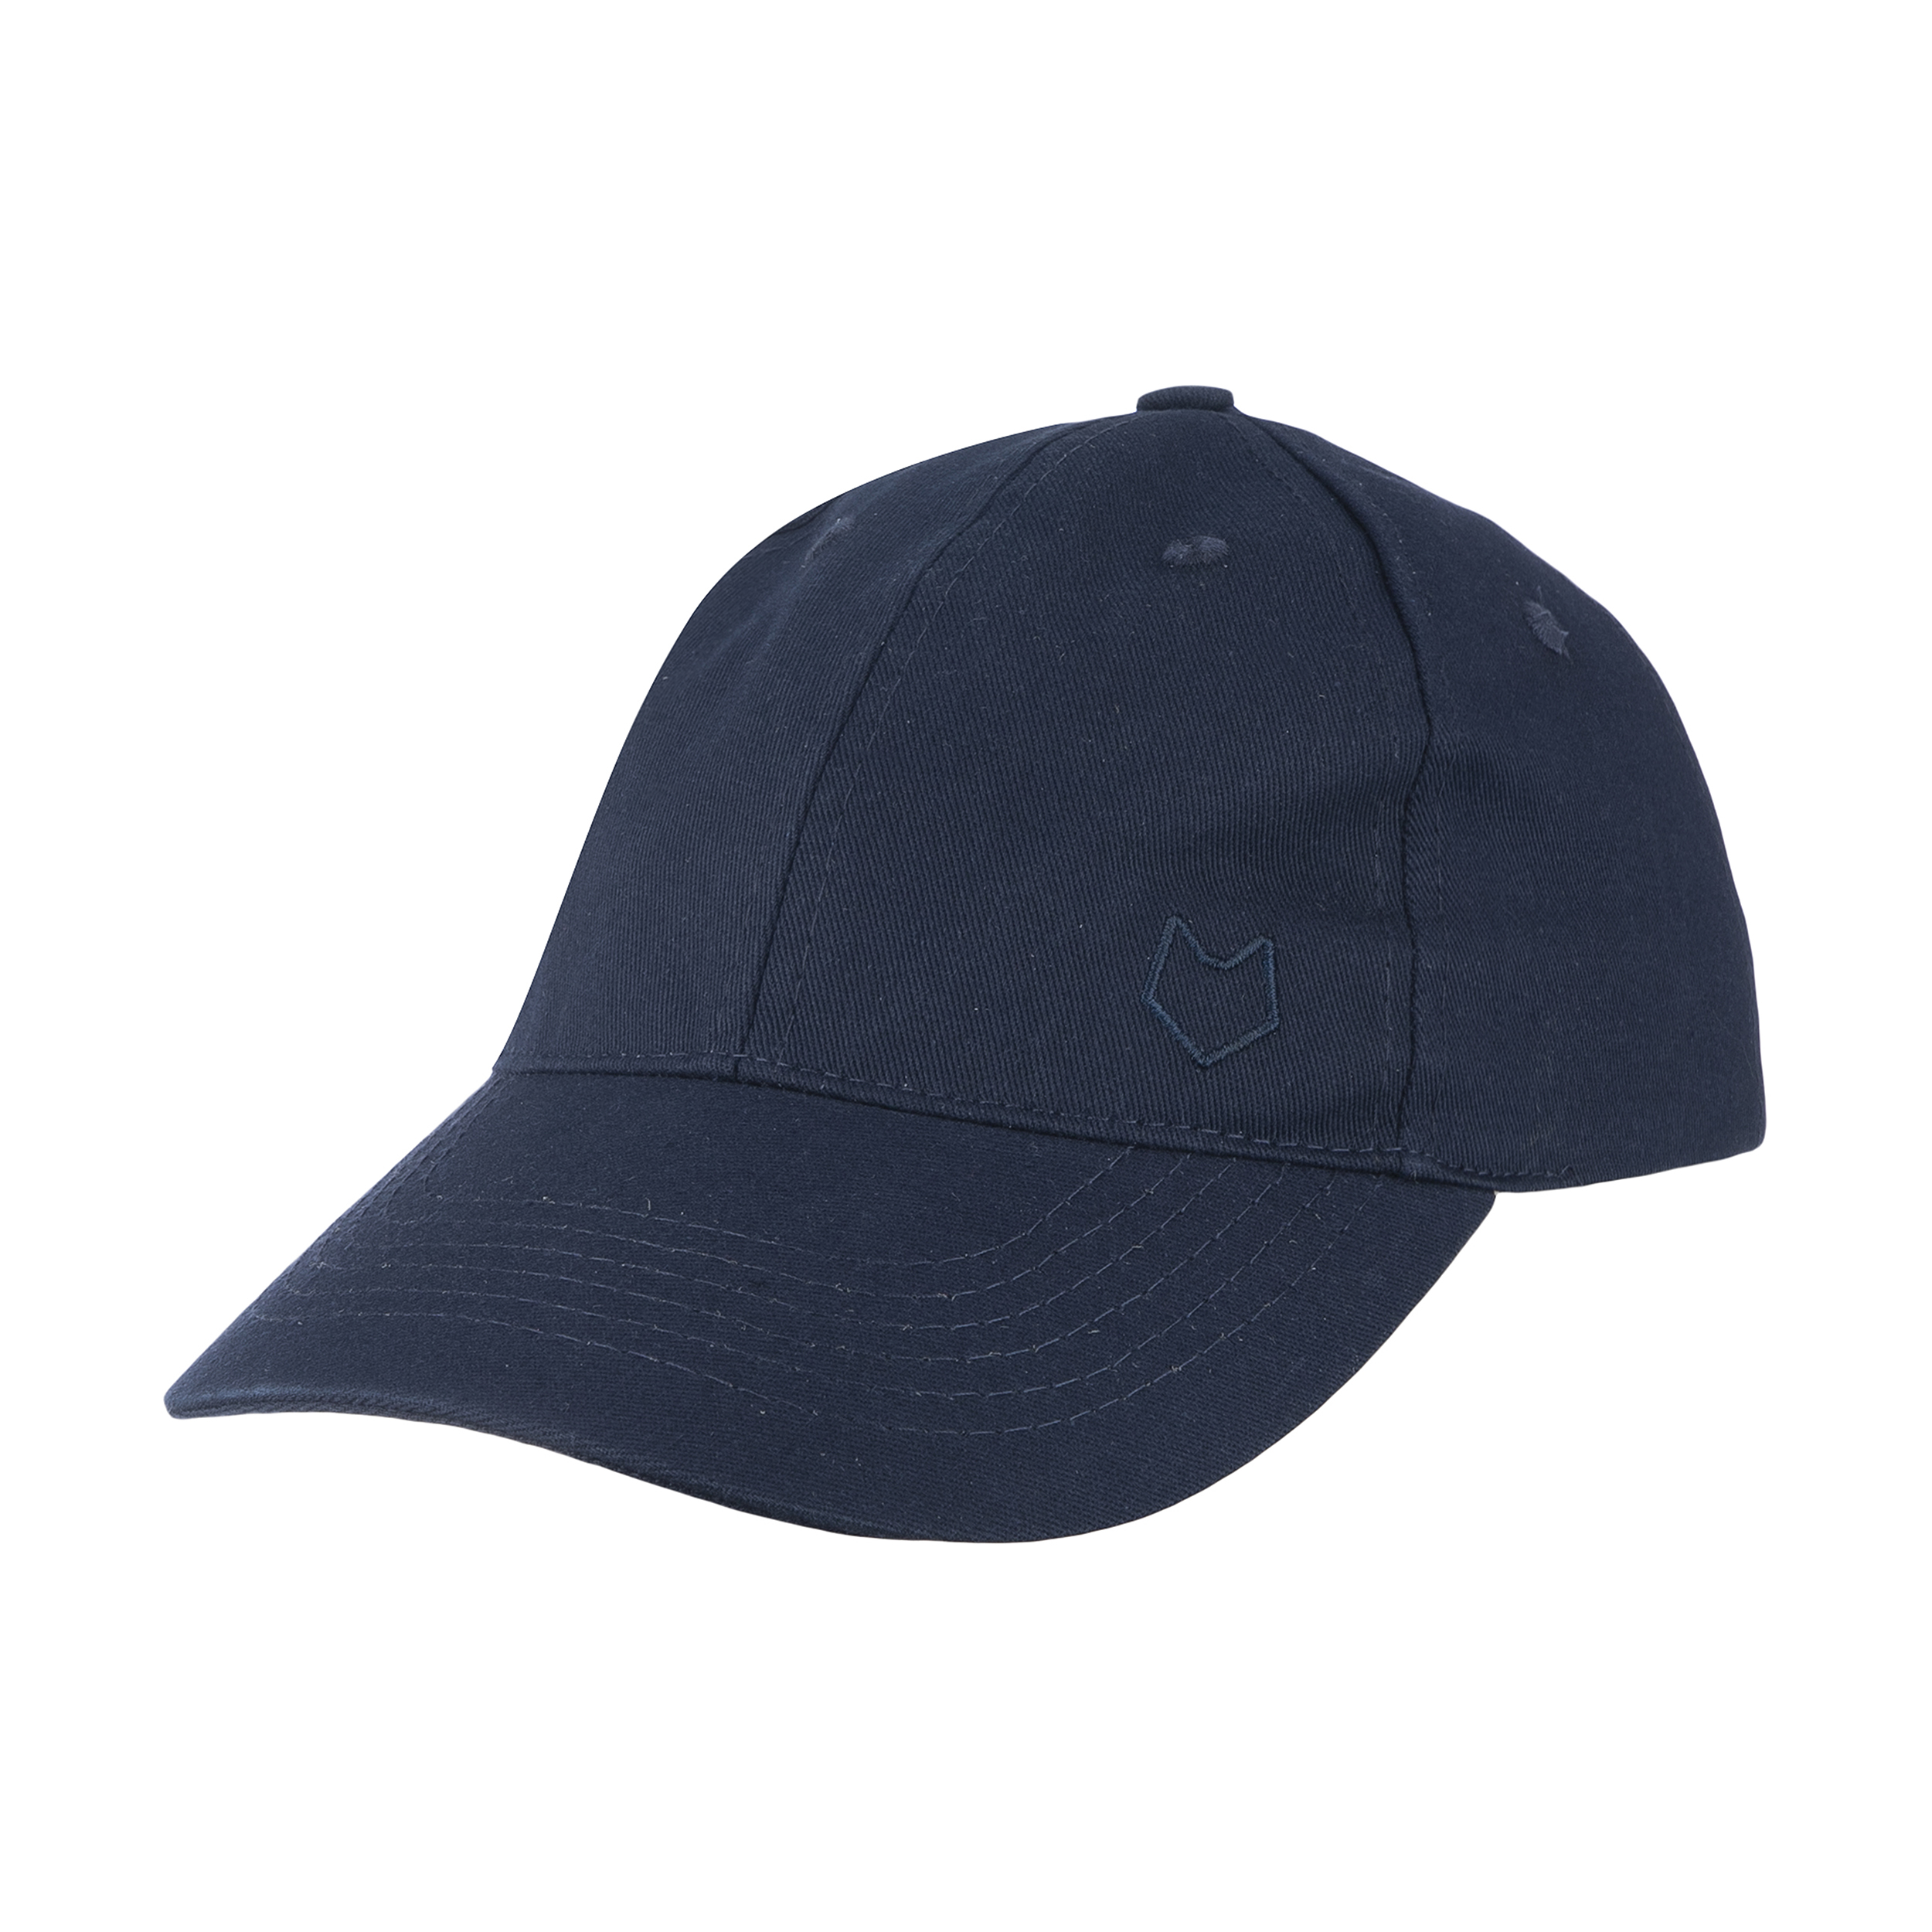 نکته خرید - قیمت روز کلاه کپ مل اند موژ مدل U07702-400 خرید